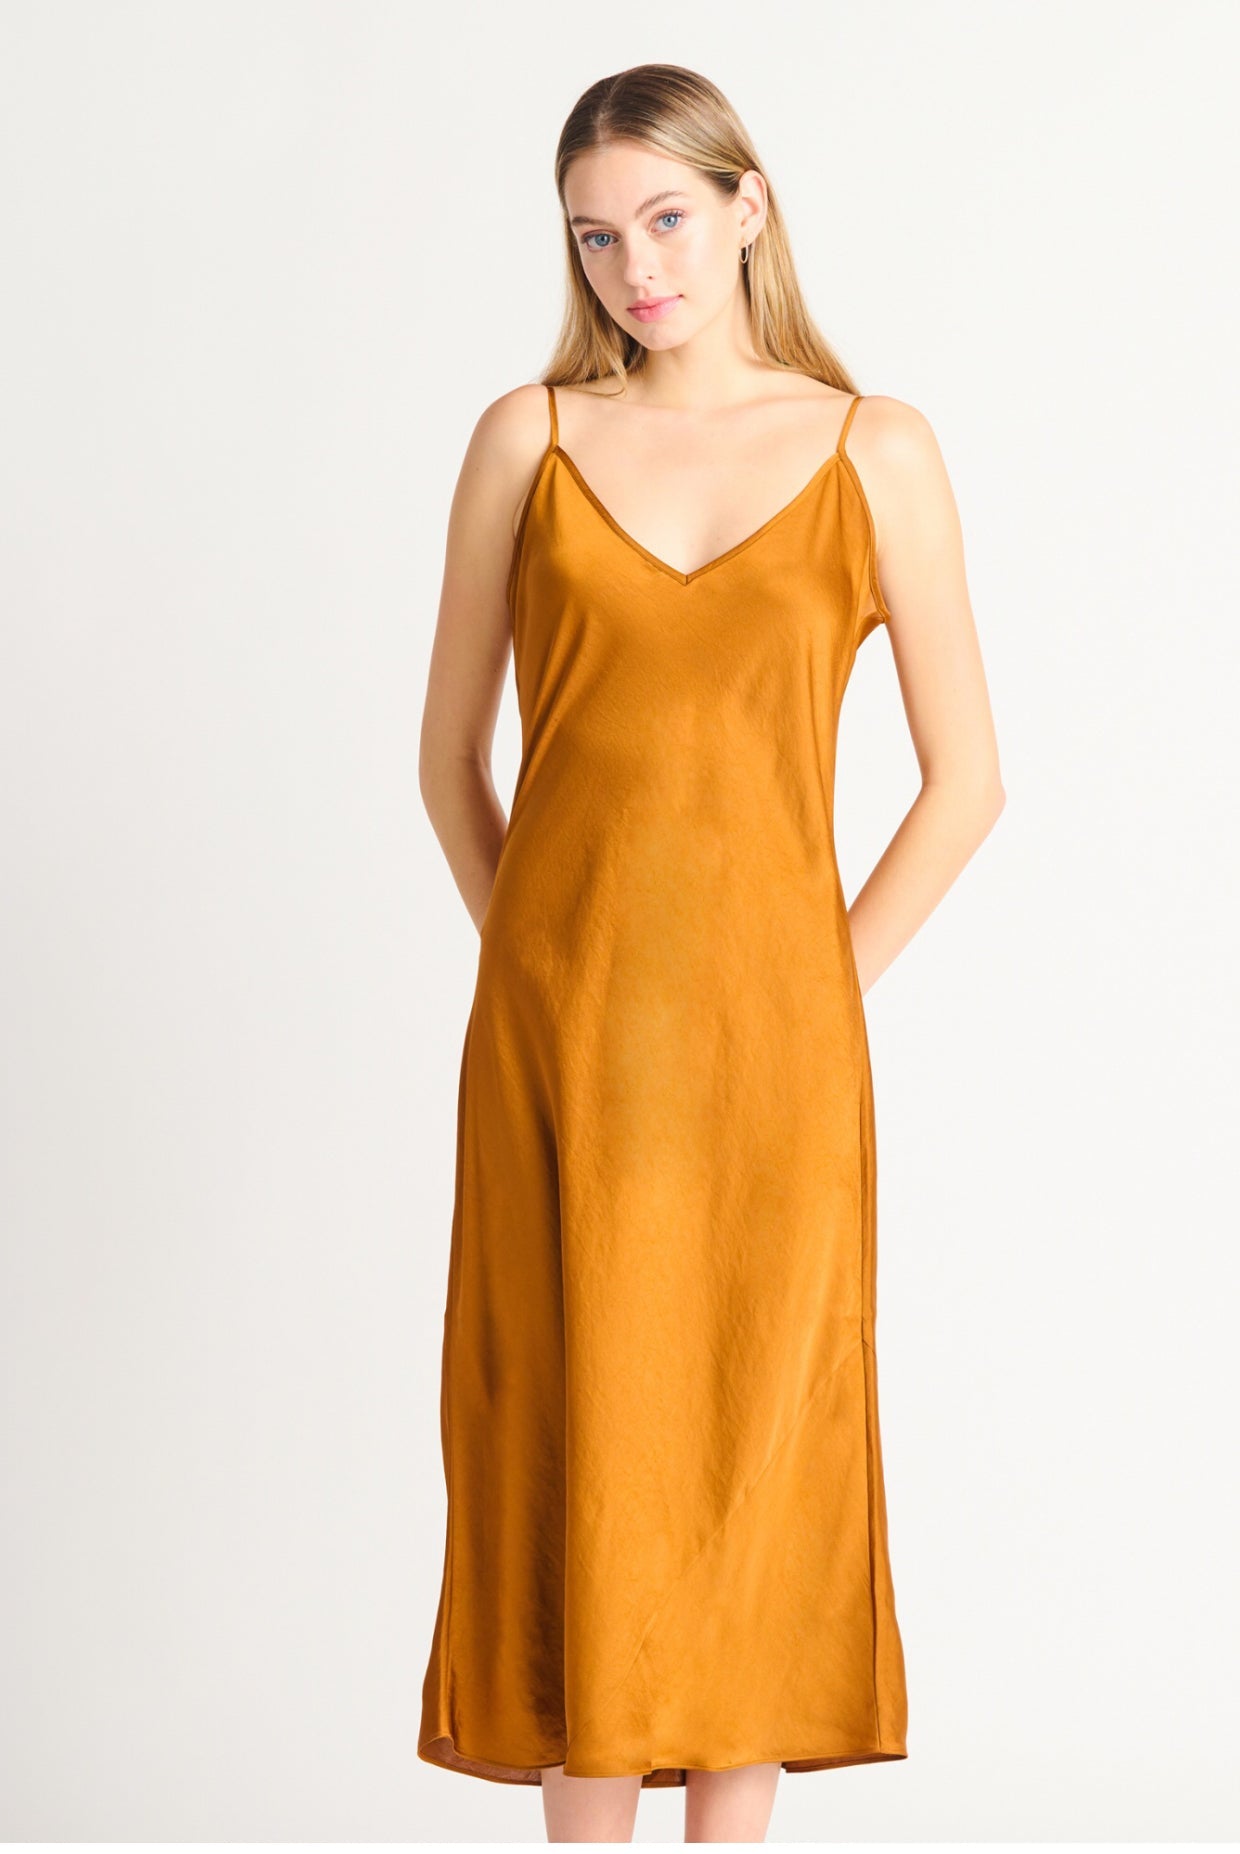 Satin Slip Dress - luxury golden brown - Blue Sky Clothing & Lingerie